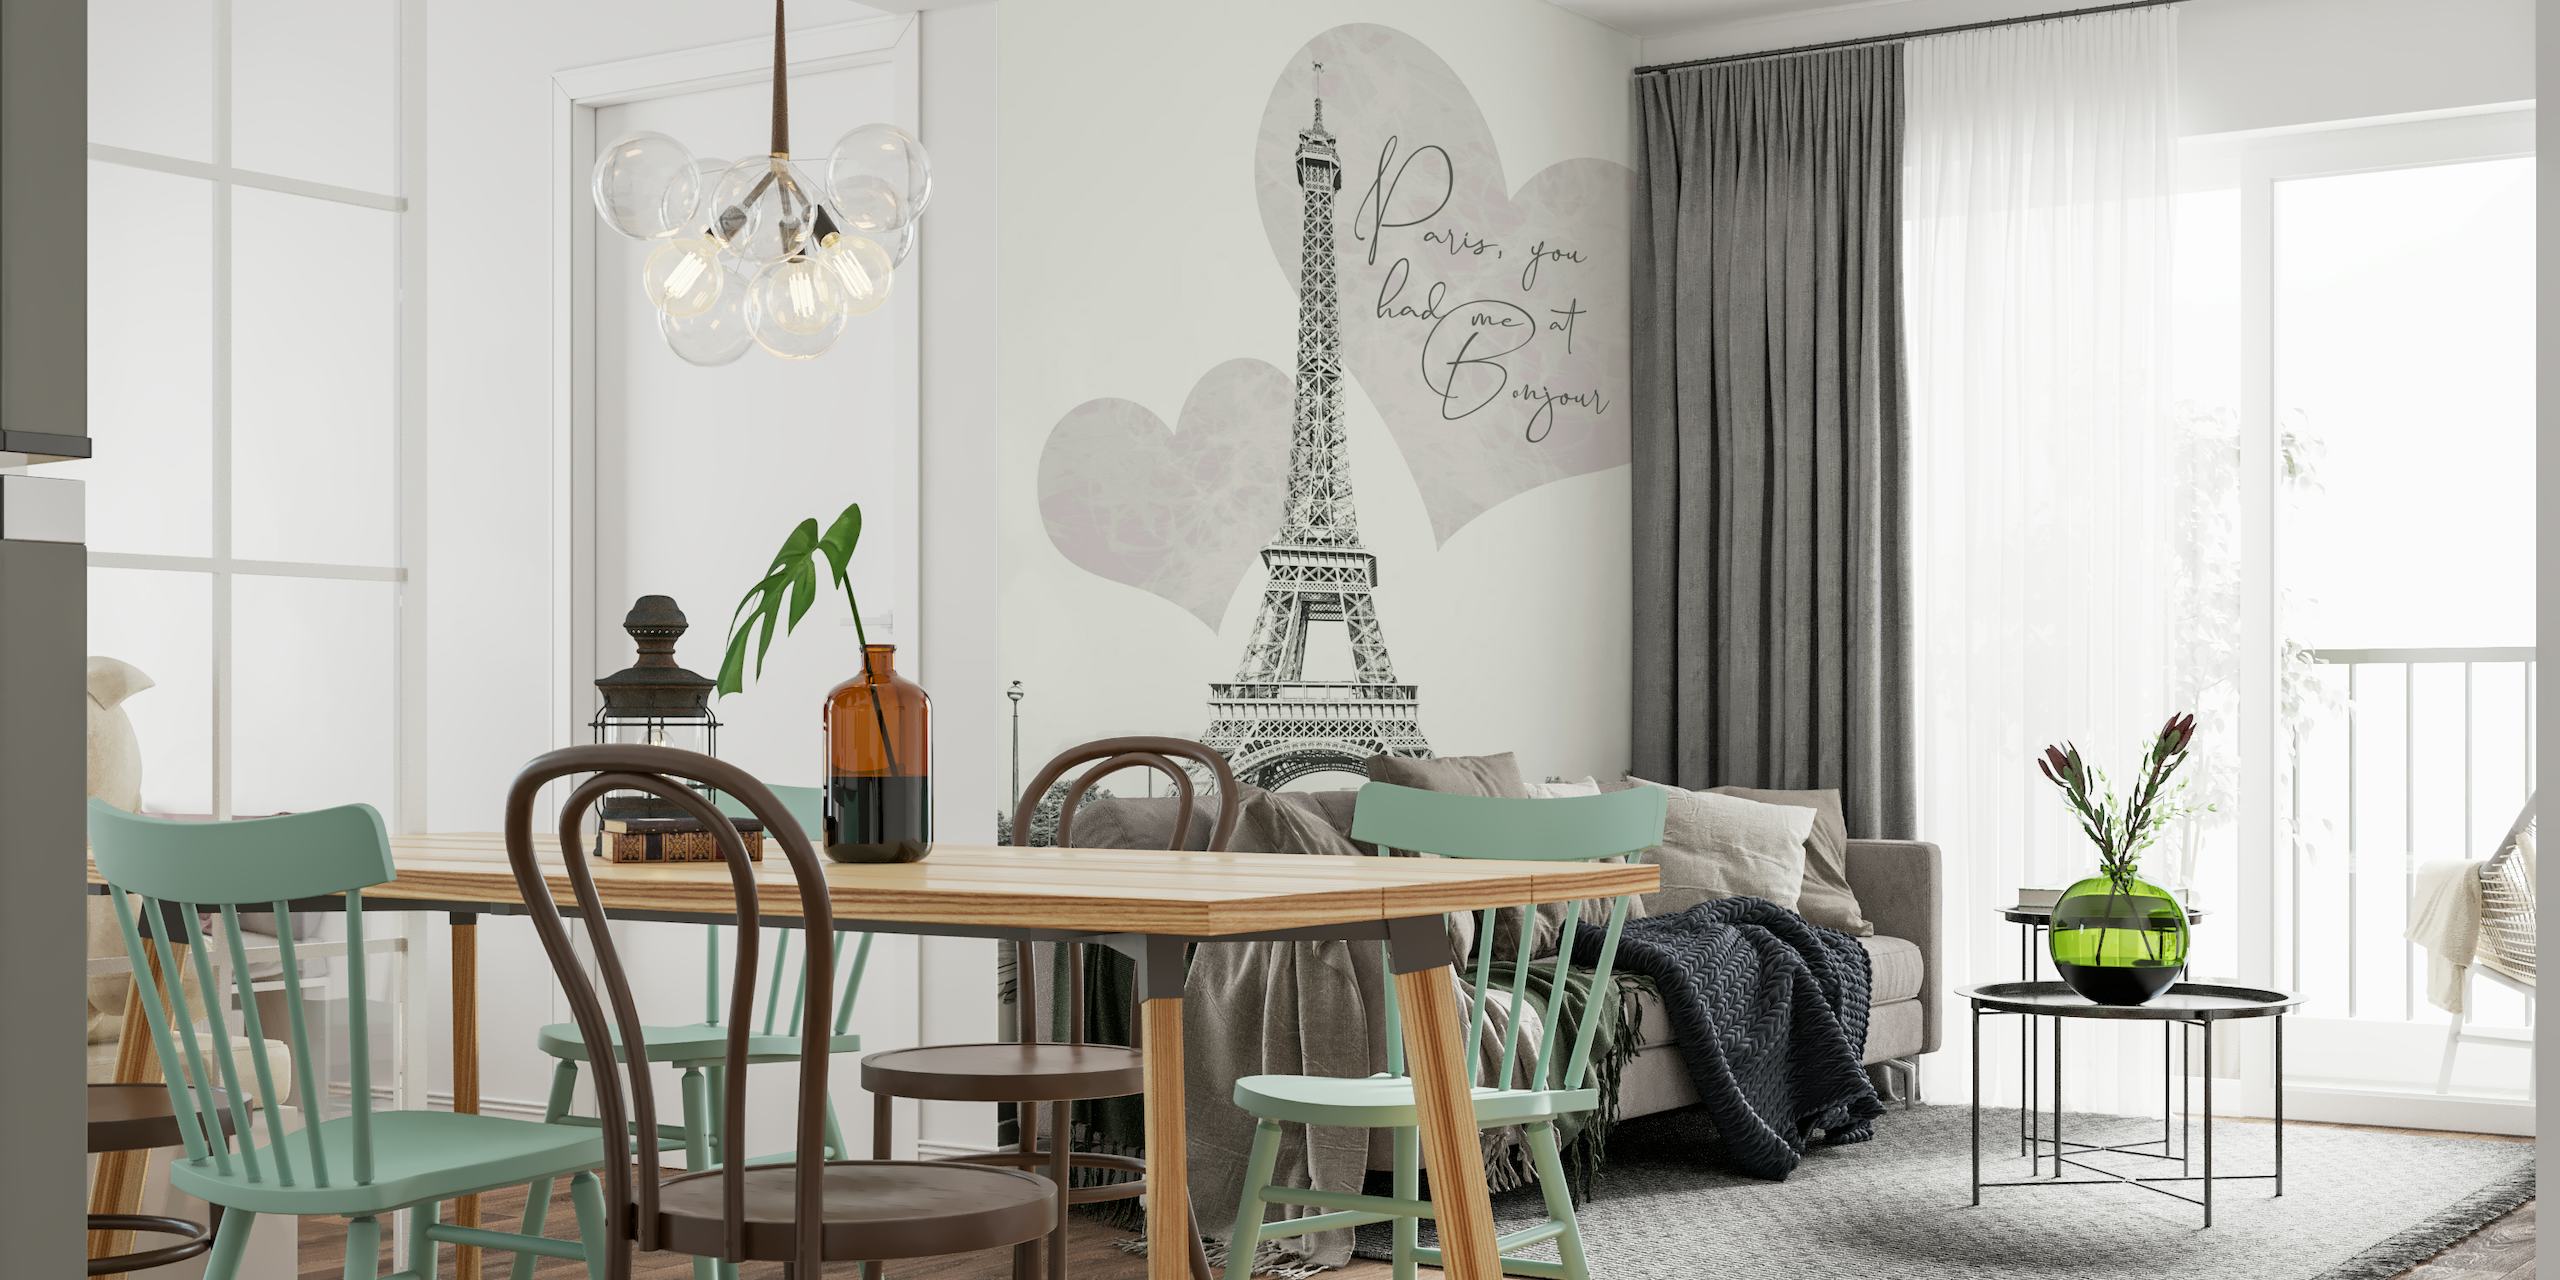 Eiffeltårnet med romantiske hjerteformer og 'Paris, du havde mig på BONJOUR' citatvægmaleri